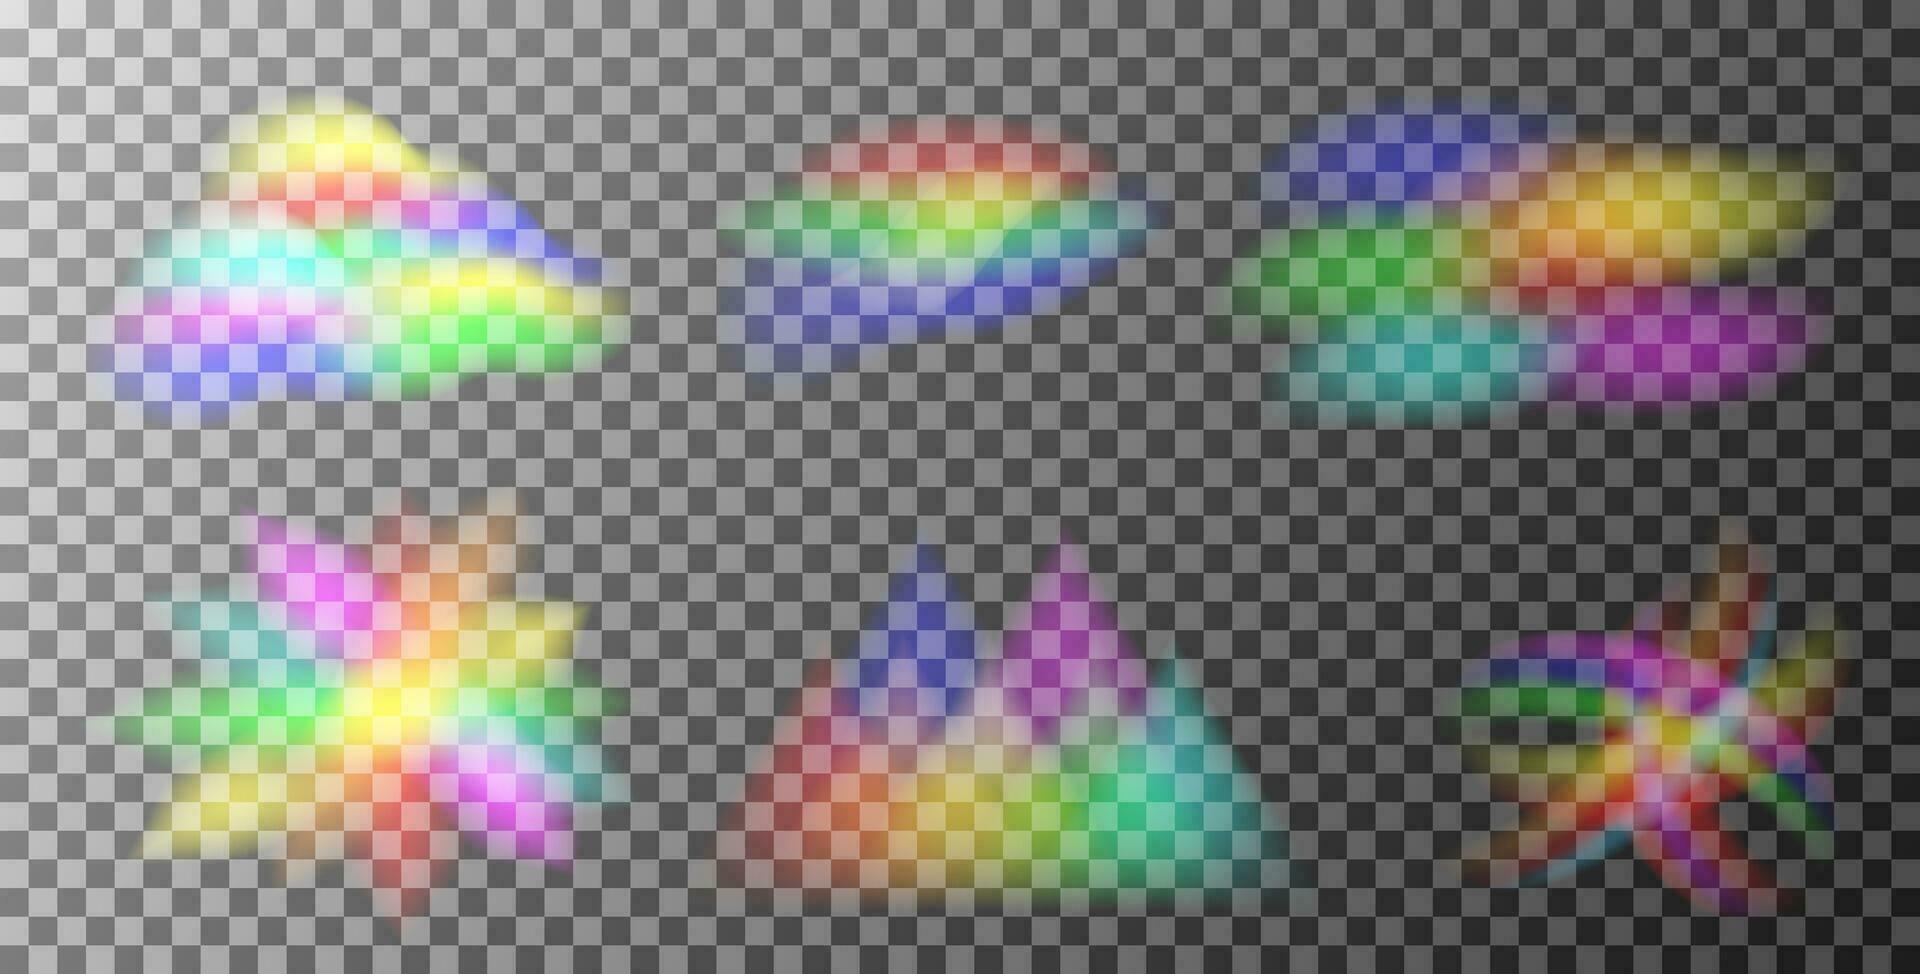 impostato di arcobaleno leggero prisma effetto. ologramma riflessione, cristallo bagliore perdita ombra sovrapposizione. vettore illustrazione di astratto sfocato iridescente leggero sfondo.